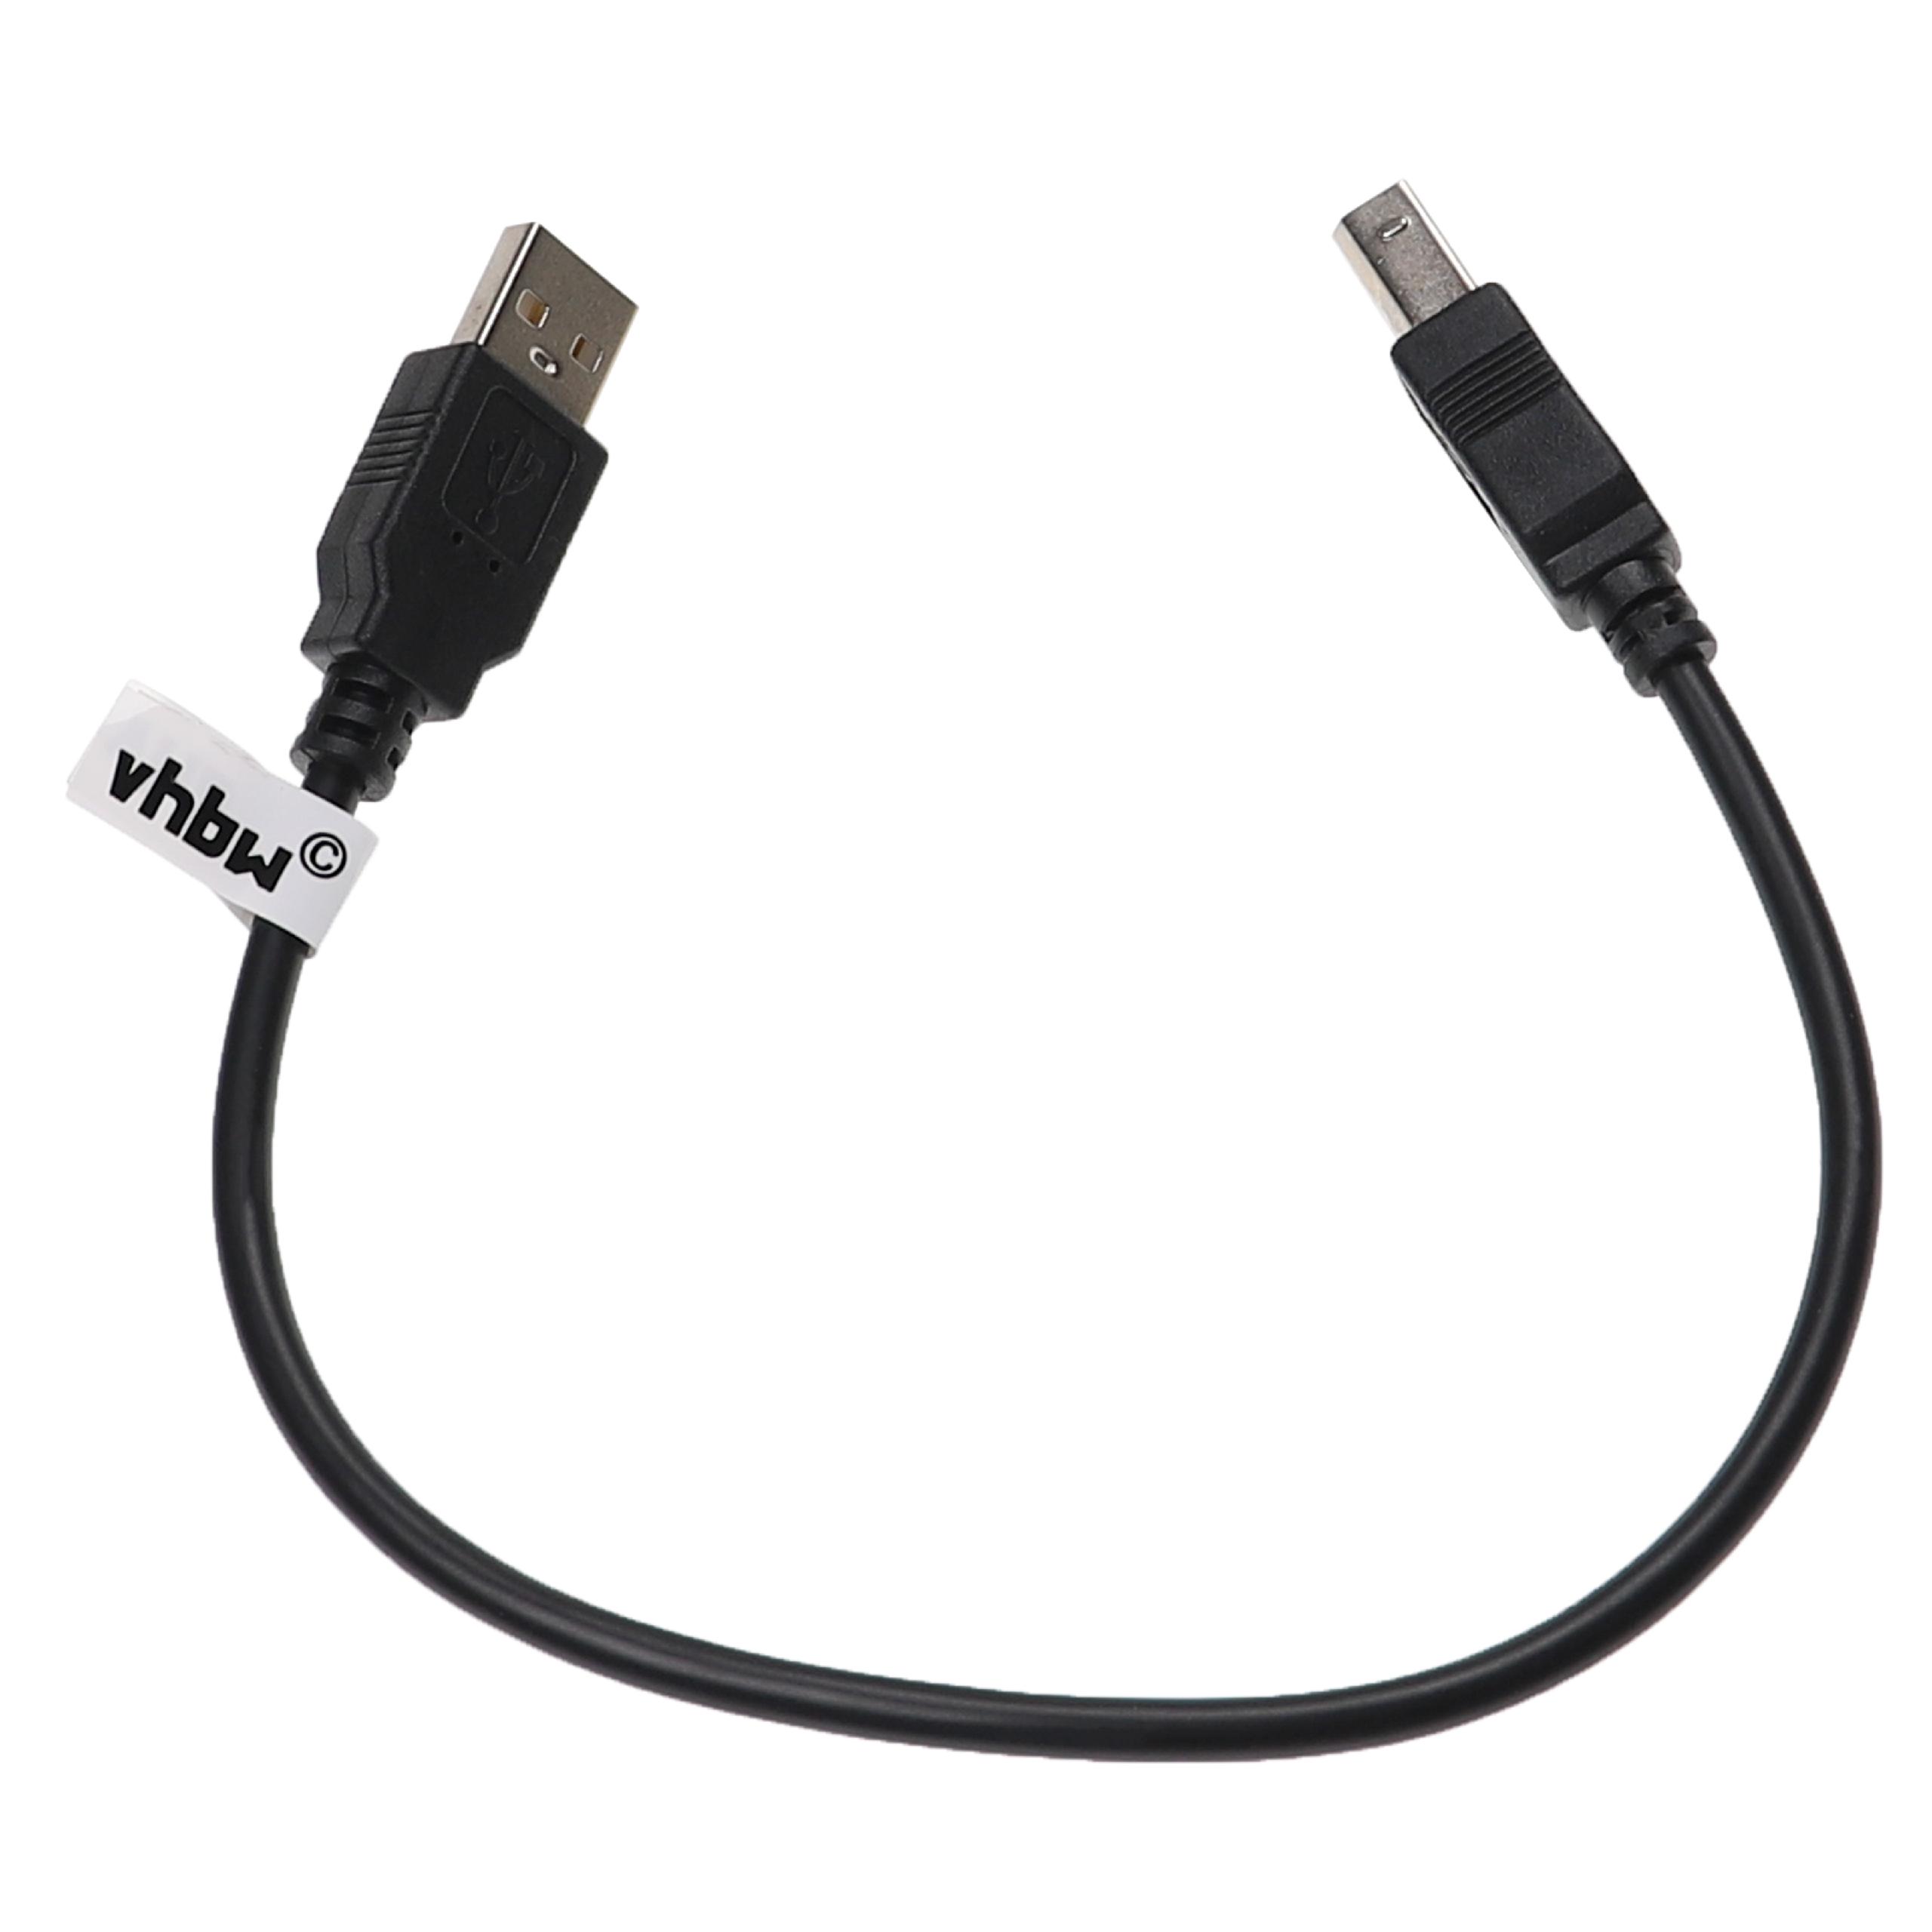 Vhbw Câble USB A vers USB B pour imprimante, scanner - Adaptateur